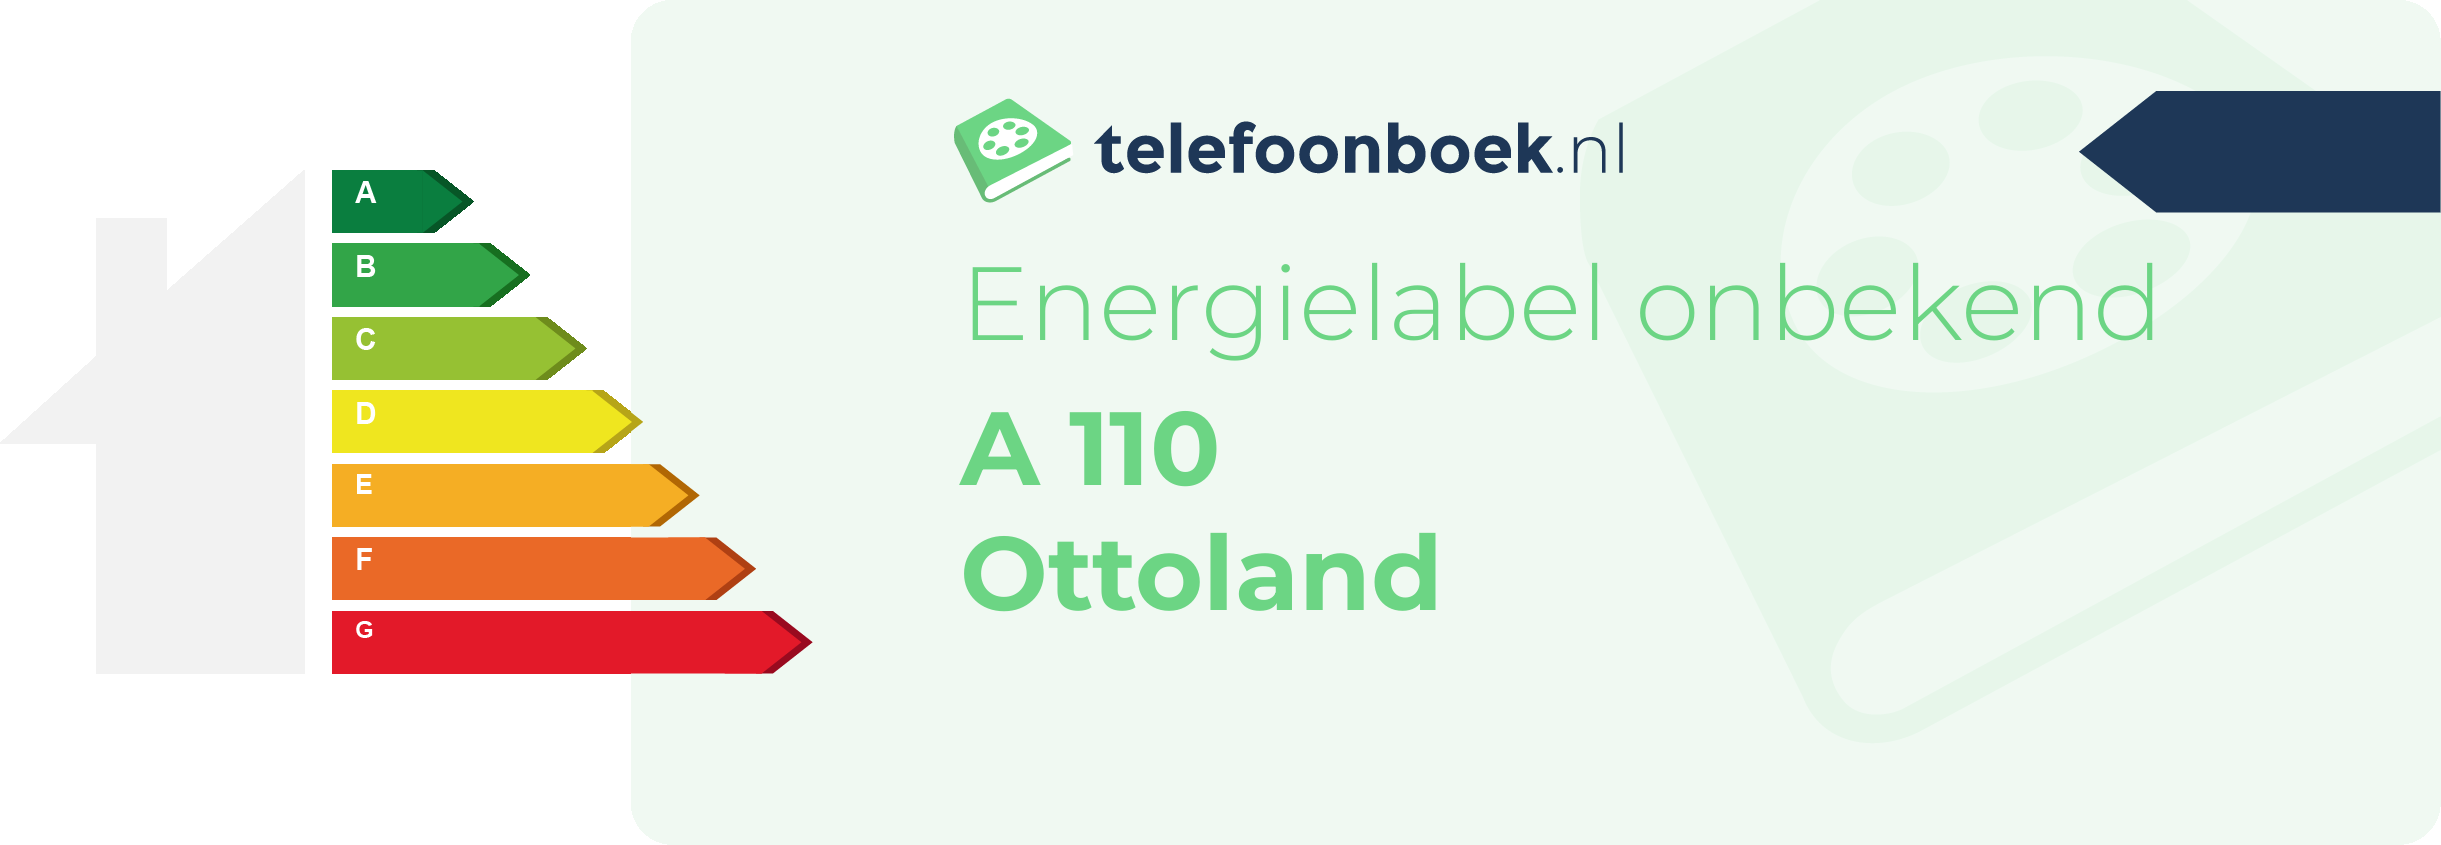 Energielabel A 110 Ottoland